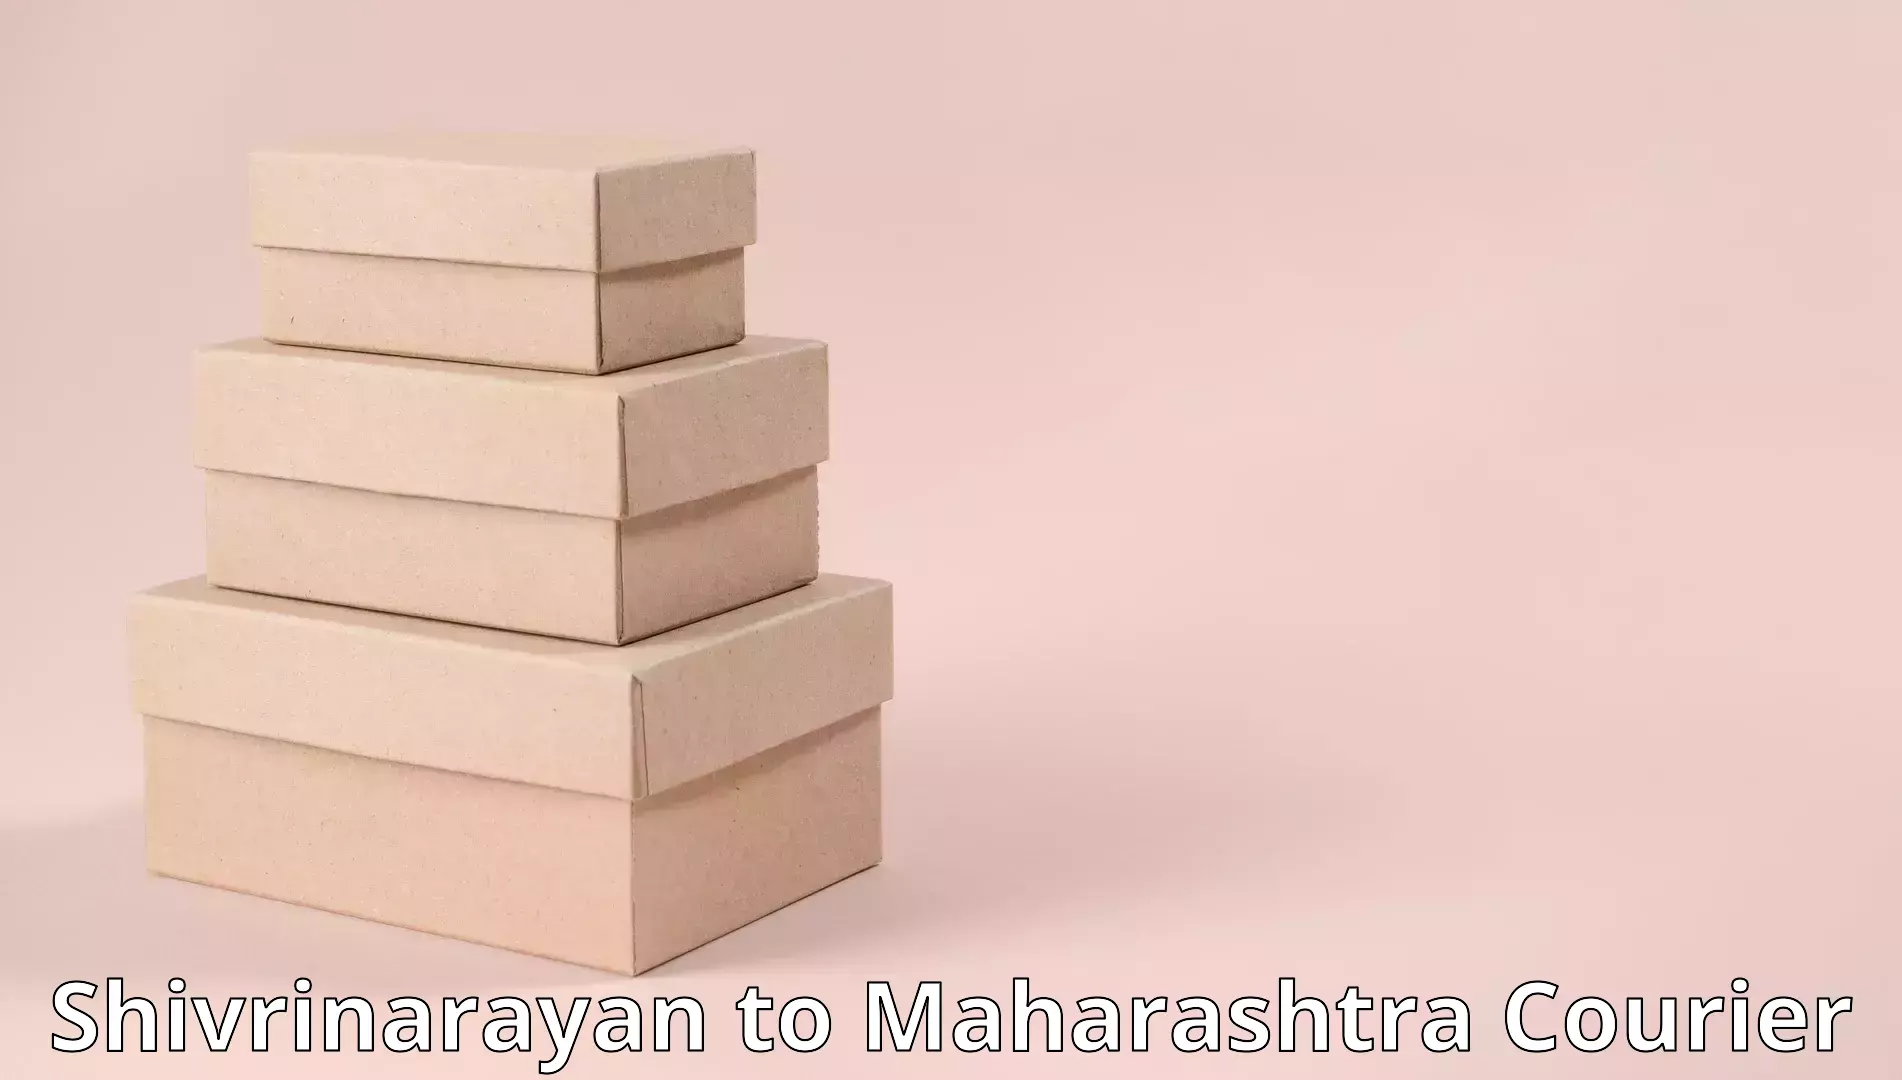 Home furniture shifting Shivrinarayan to Maharashtra